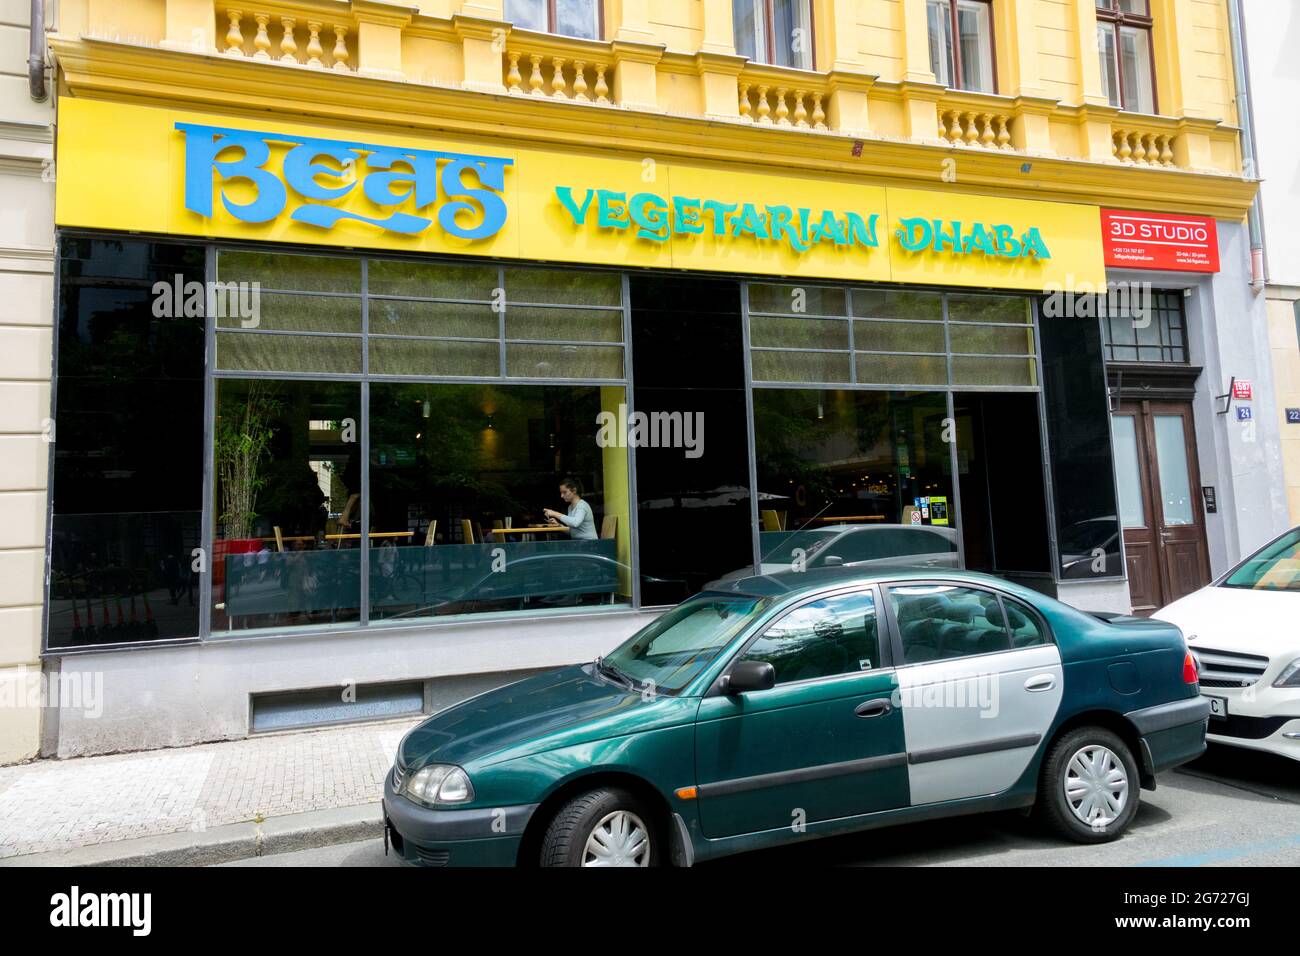 Dhaba Beas vegan et restaurant végétarien Prague République tchèque Banque D'Images